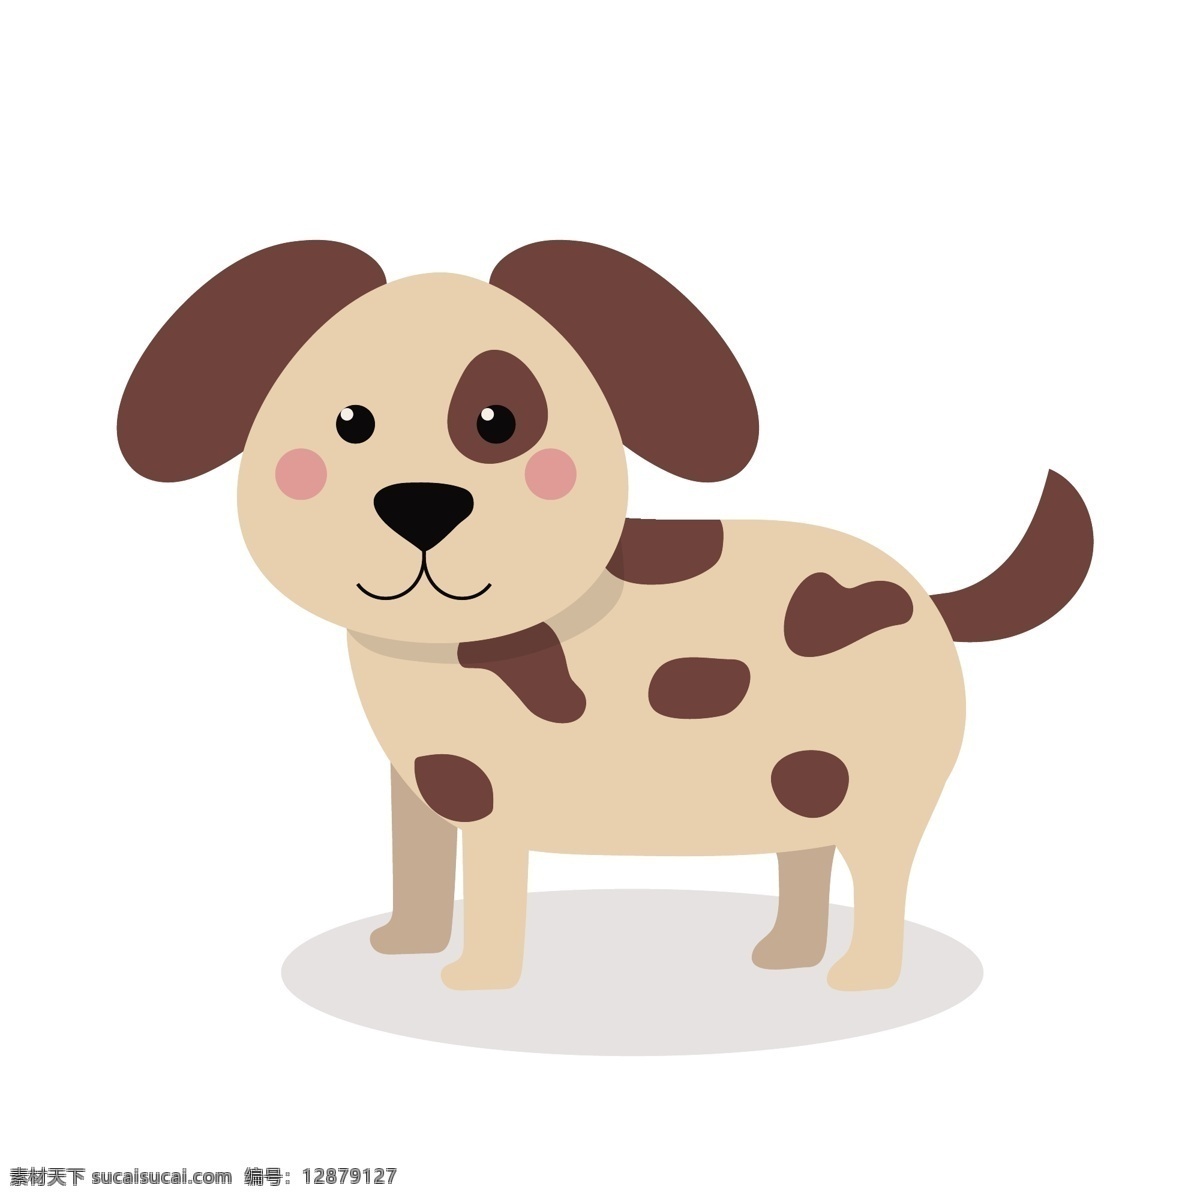 卡通 斑点狗 矢量 小狗 斑点 卡通可爱 可爱 可爱卡通 可爱的 卡通的 卡通斑点狗